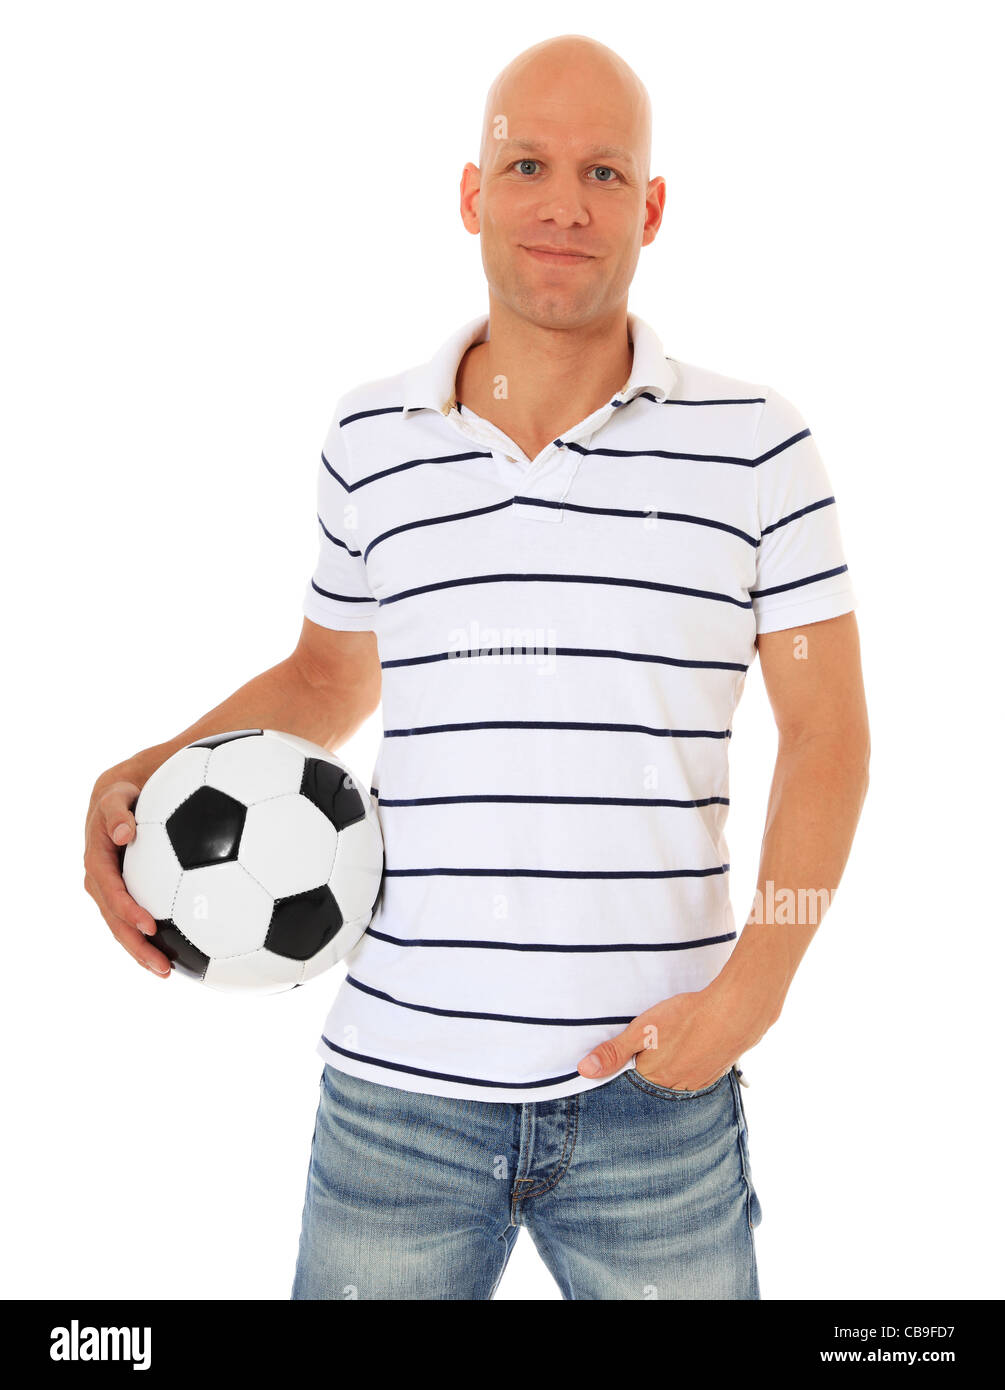 Attractive man holding soccer ball. Le tout sur fond blanc. Banque D'Images